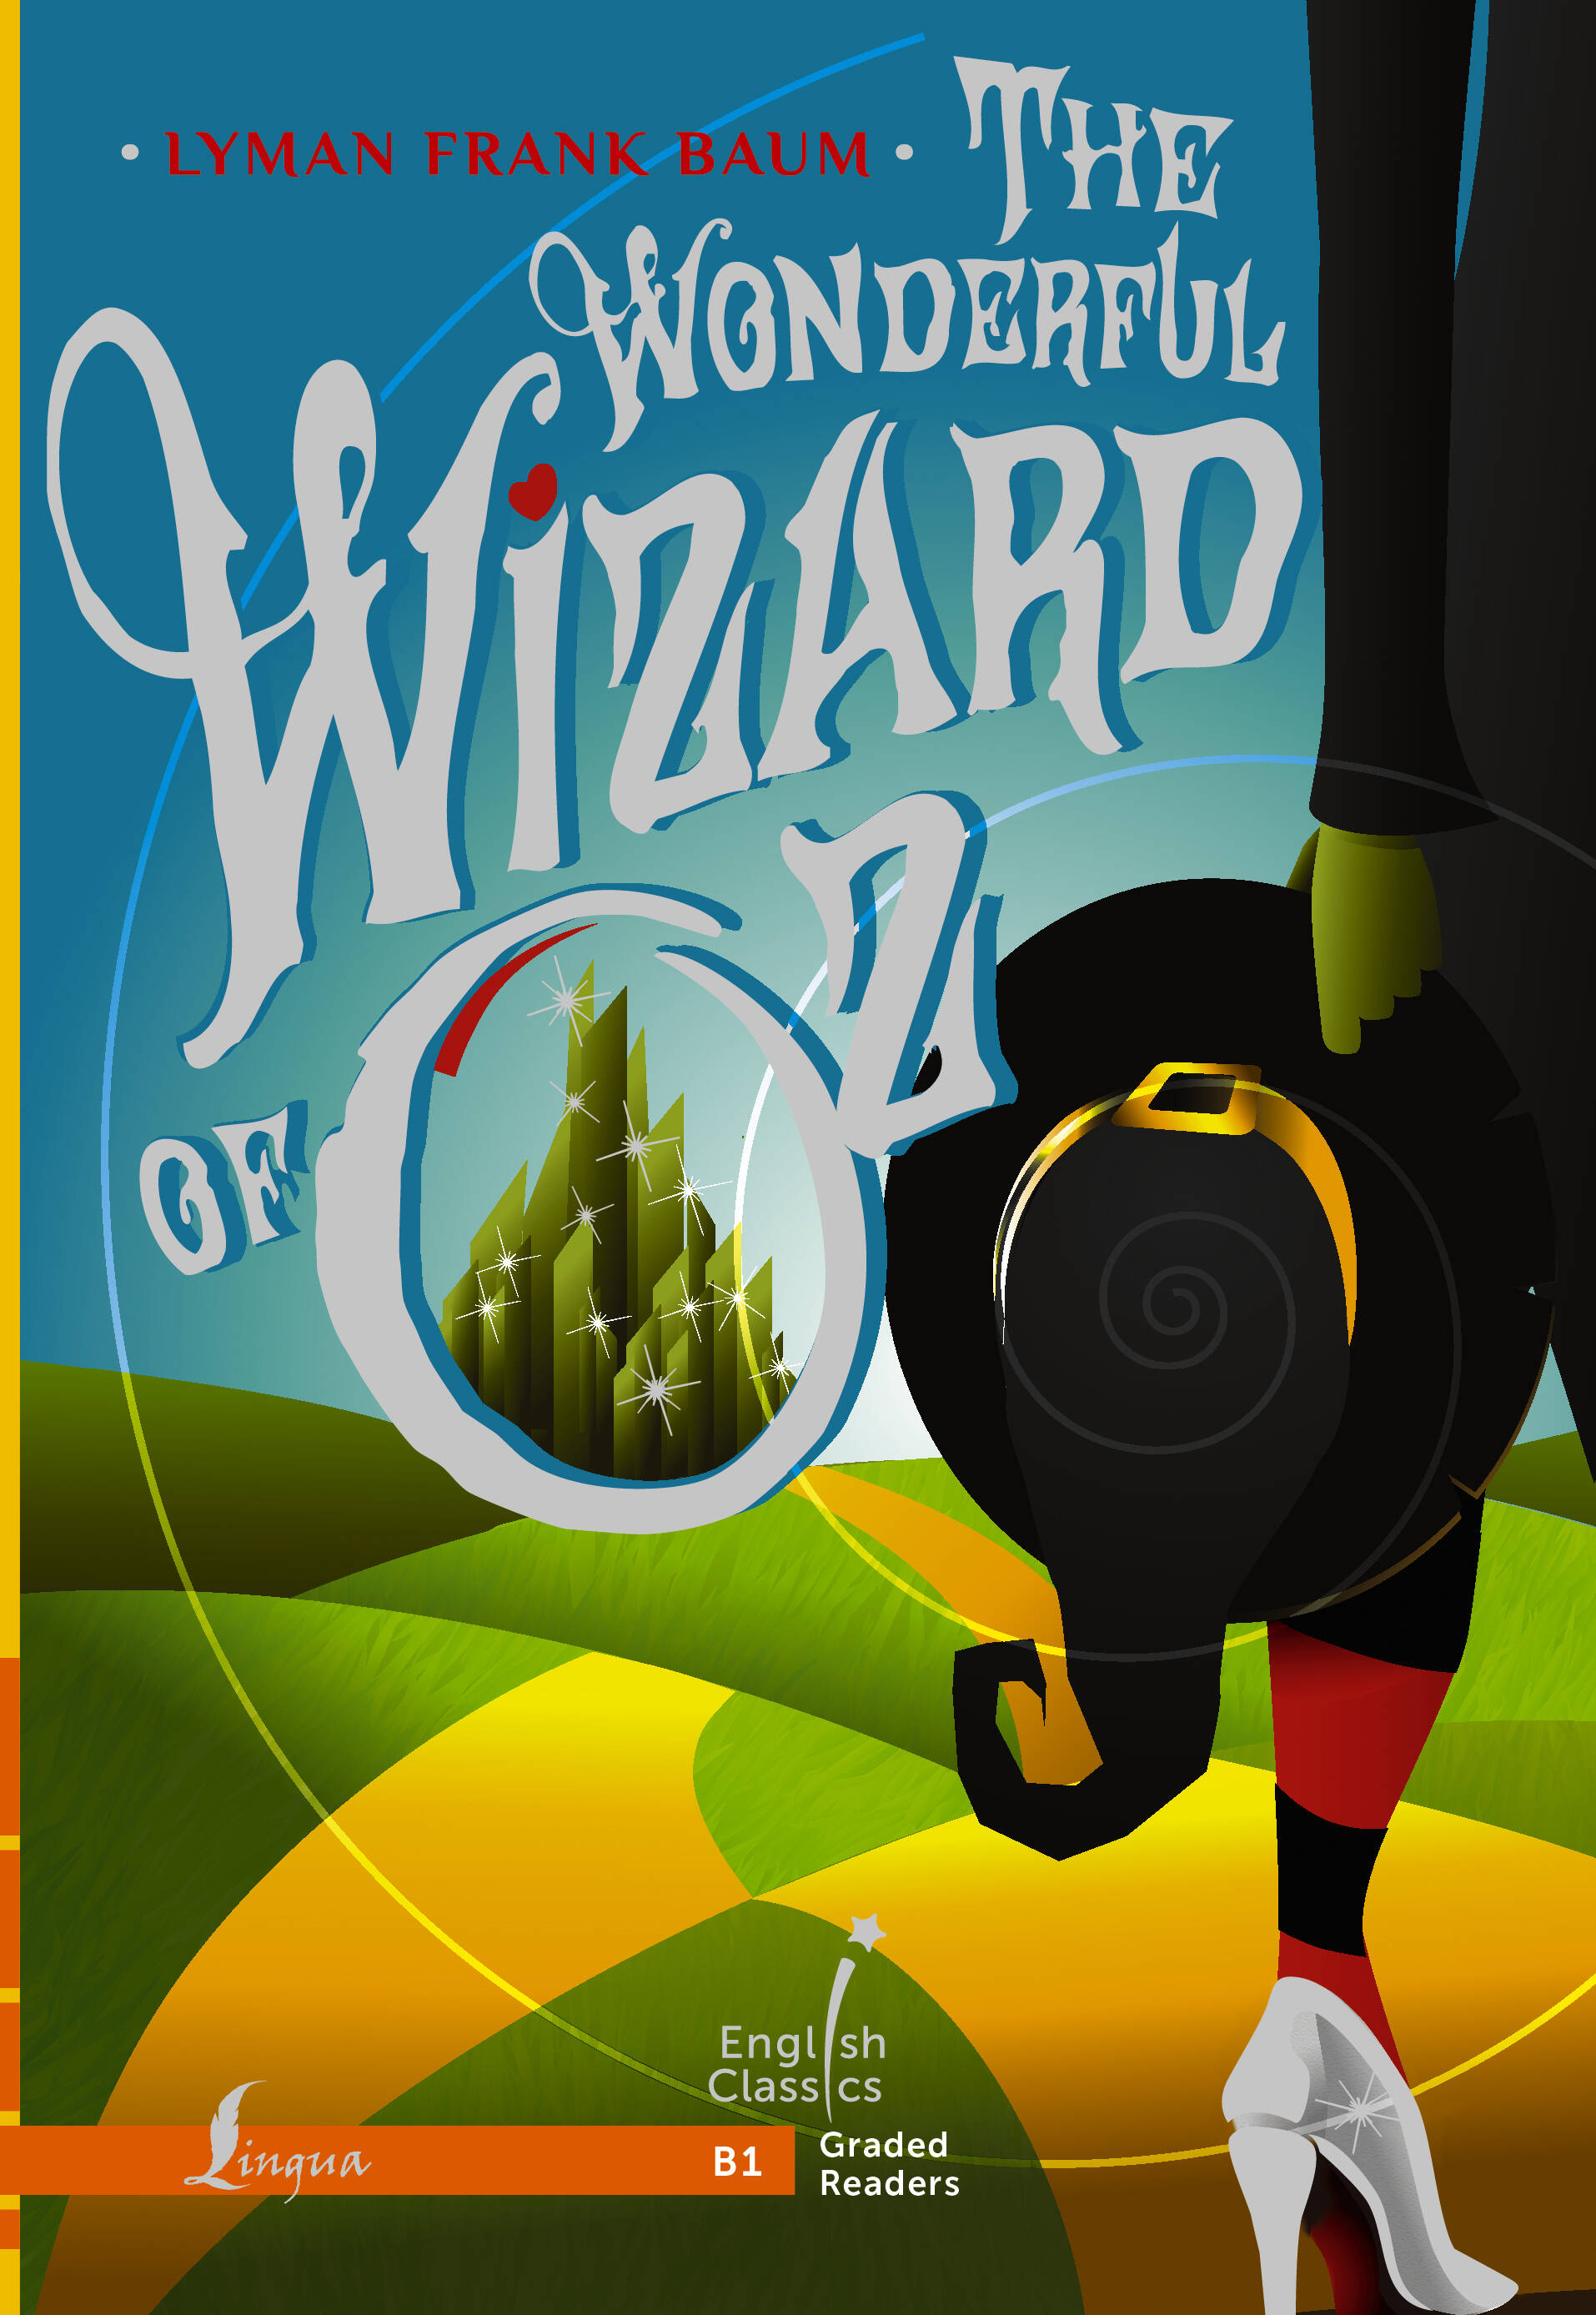 баум лаймен фрэнк лаймен the wonderful wizard of oz Баум Лаймен Фрэнк Лаймен The Wonderful Wizard of Oz. B1